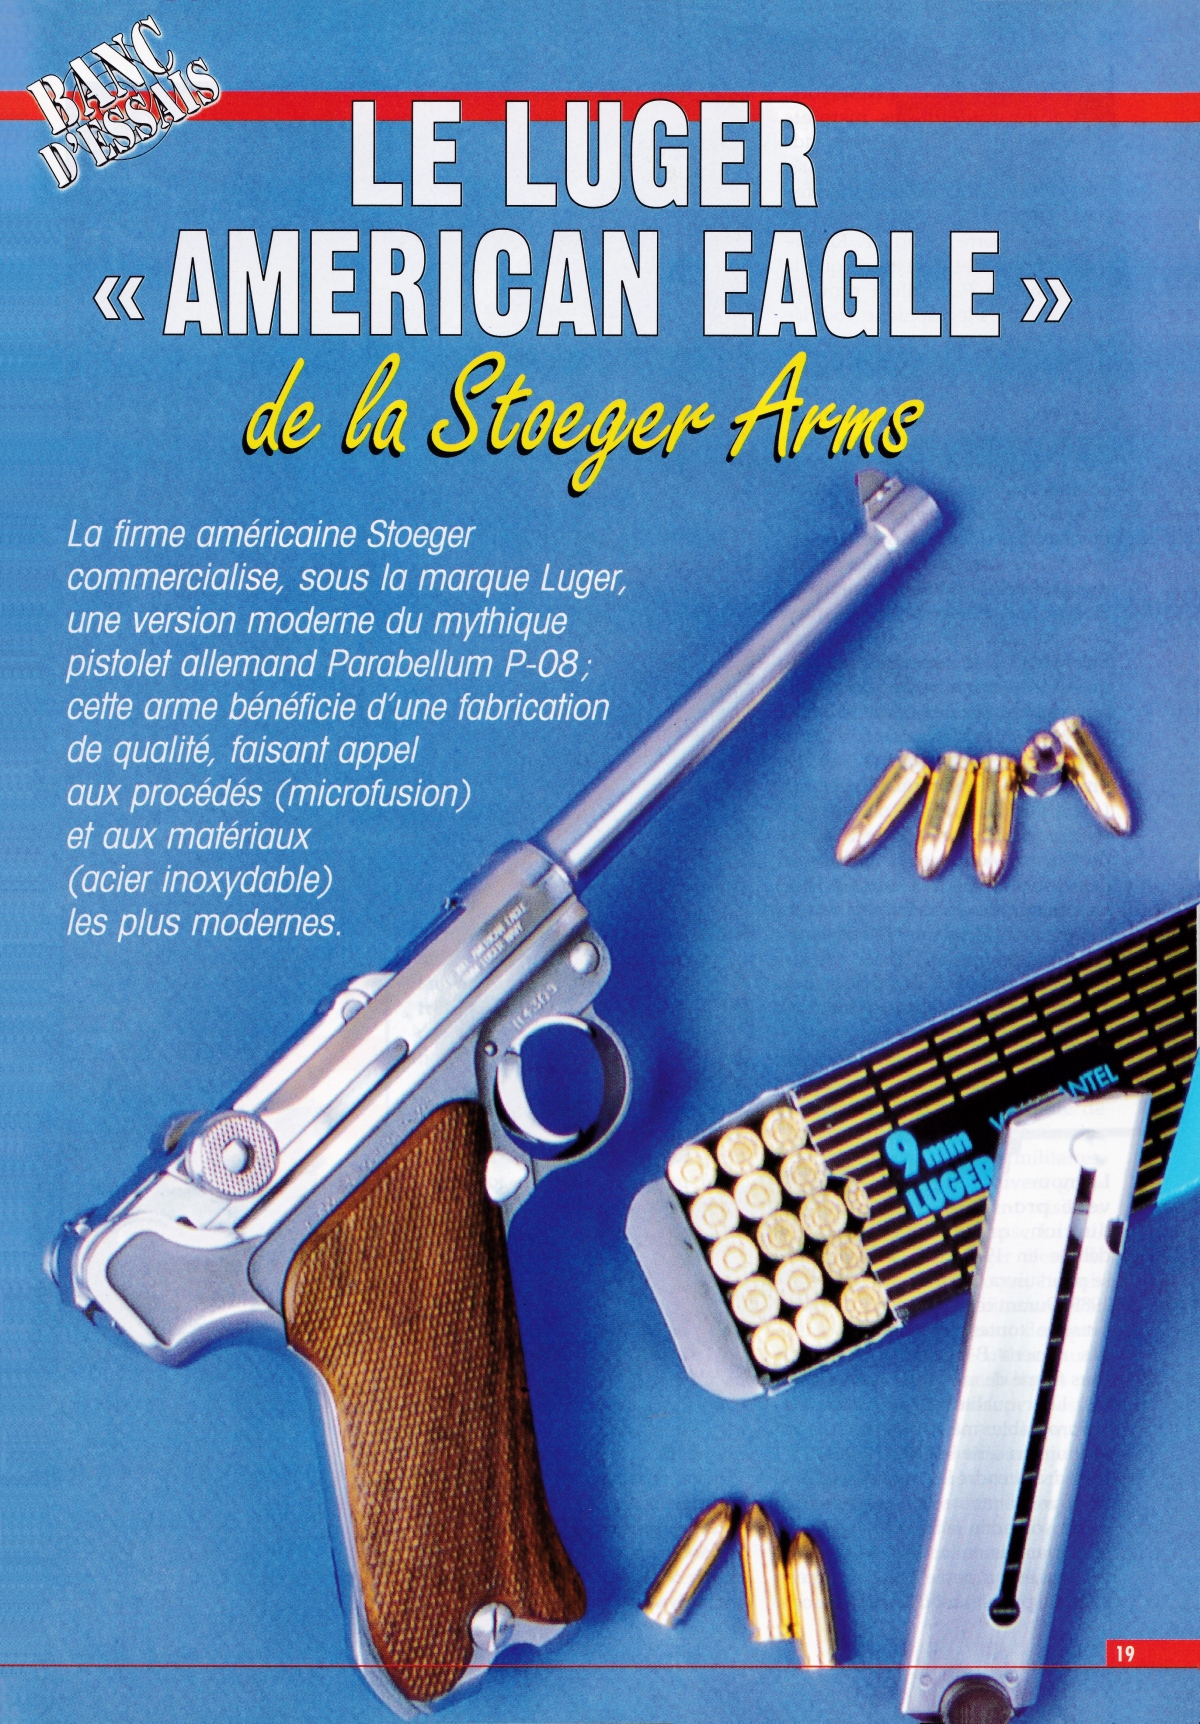 Le Luger "American Eagle" de la firme américaine Stoeger, accompagné par des cartouches allemandes Geco à balle 124 grains Full Metal Jacket.